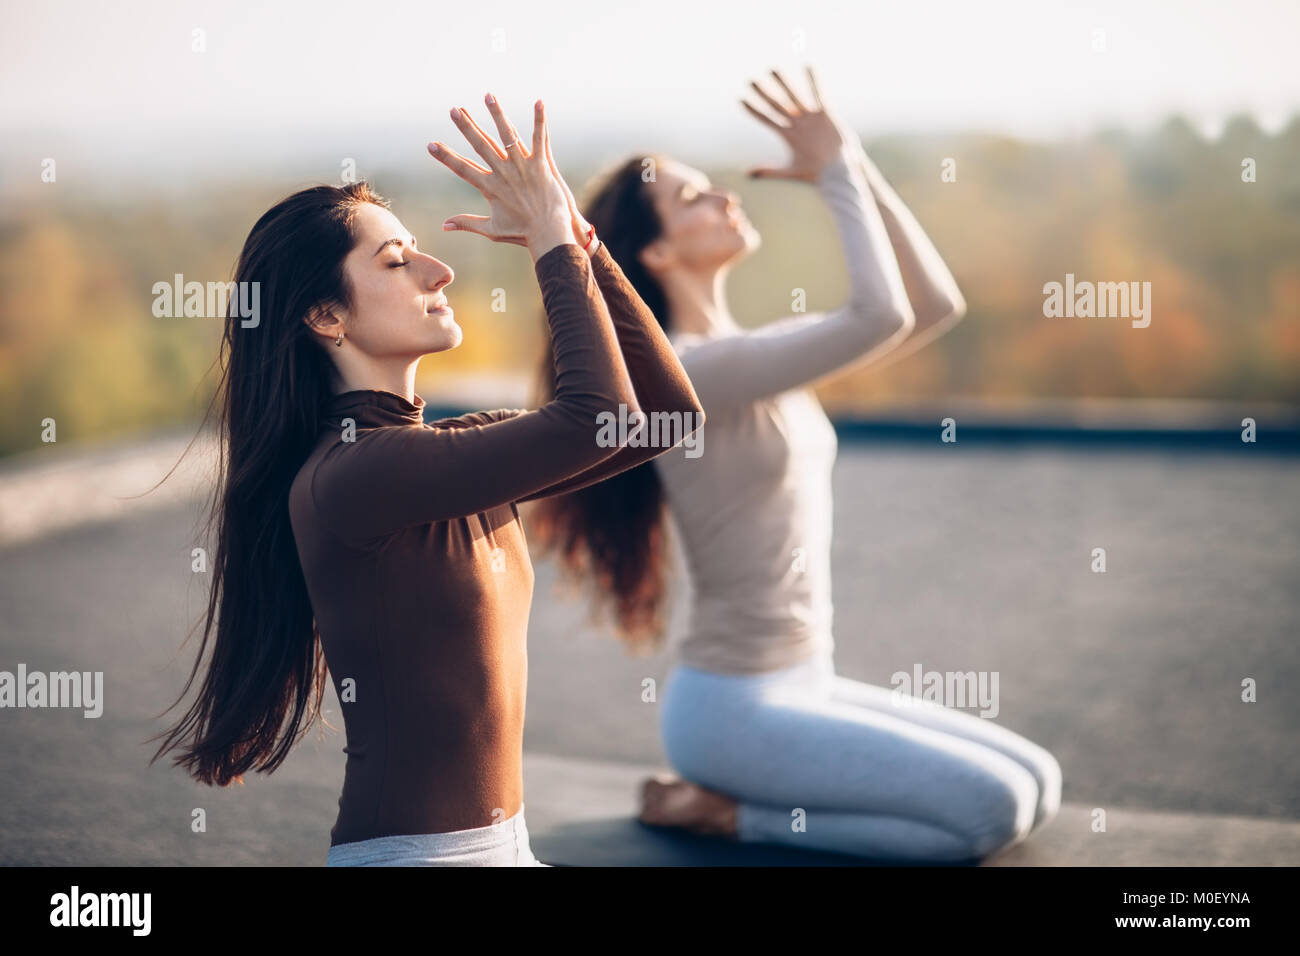 Deux jeunes belles femmes faisant du yoga asana, assis en vajrasana exercice sur le toit à l'extérieur. Girlfriends effectuer une pose confortable de l'est de prat Banque D'Images